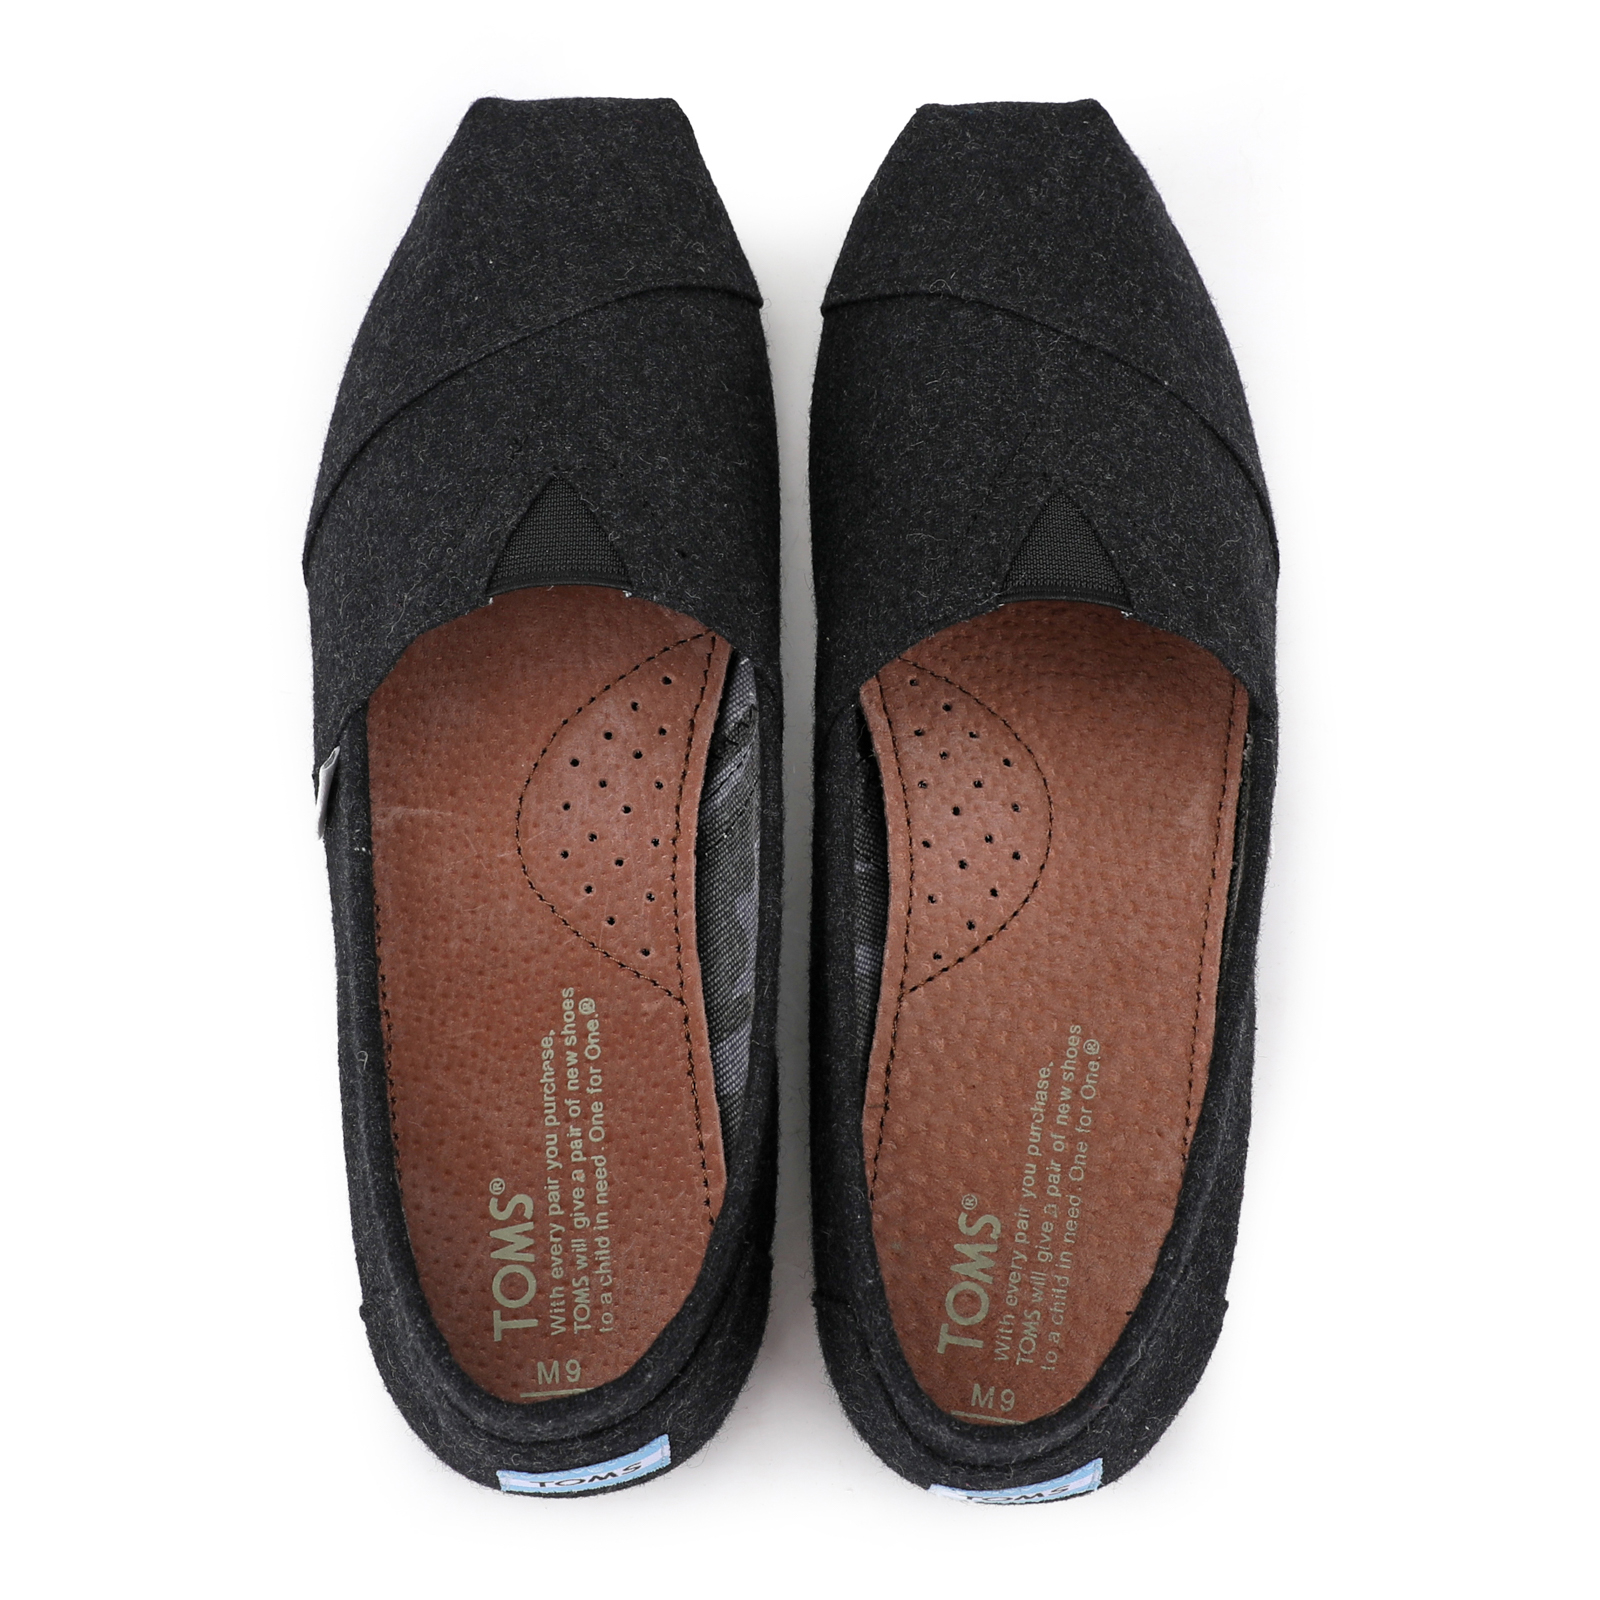 Toms台灣新款黑色法蘭絨男鞋 - 點擊圖片關閉